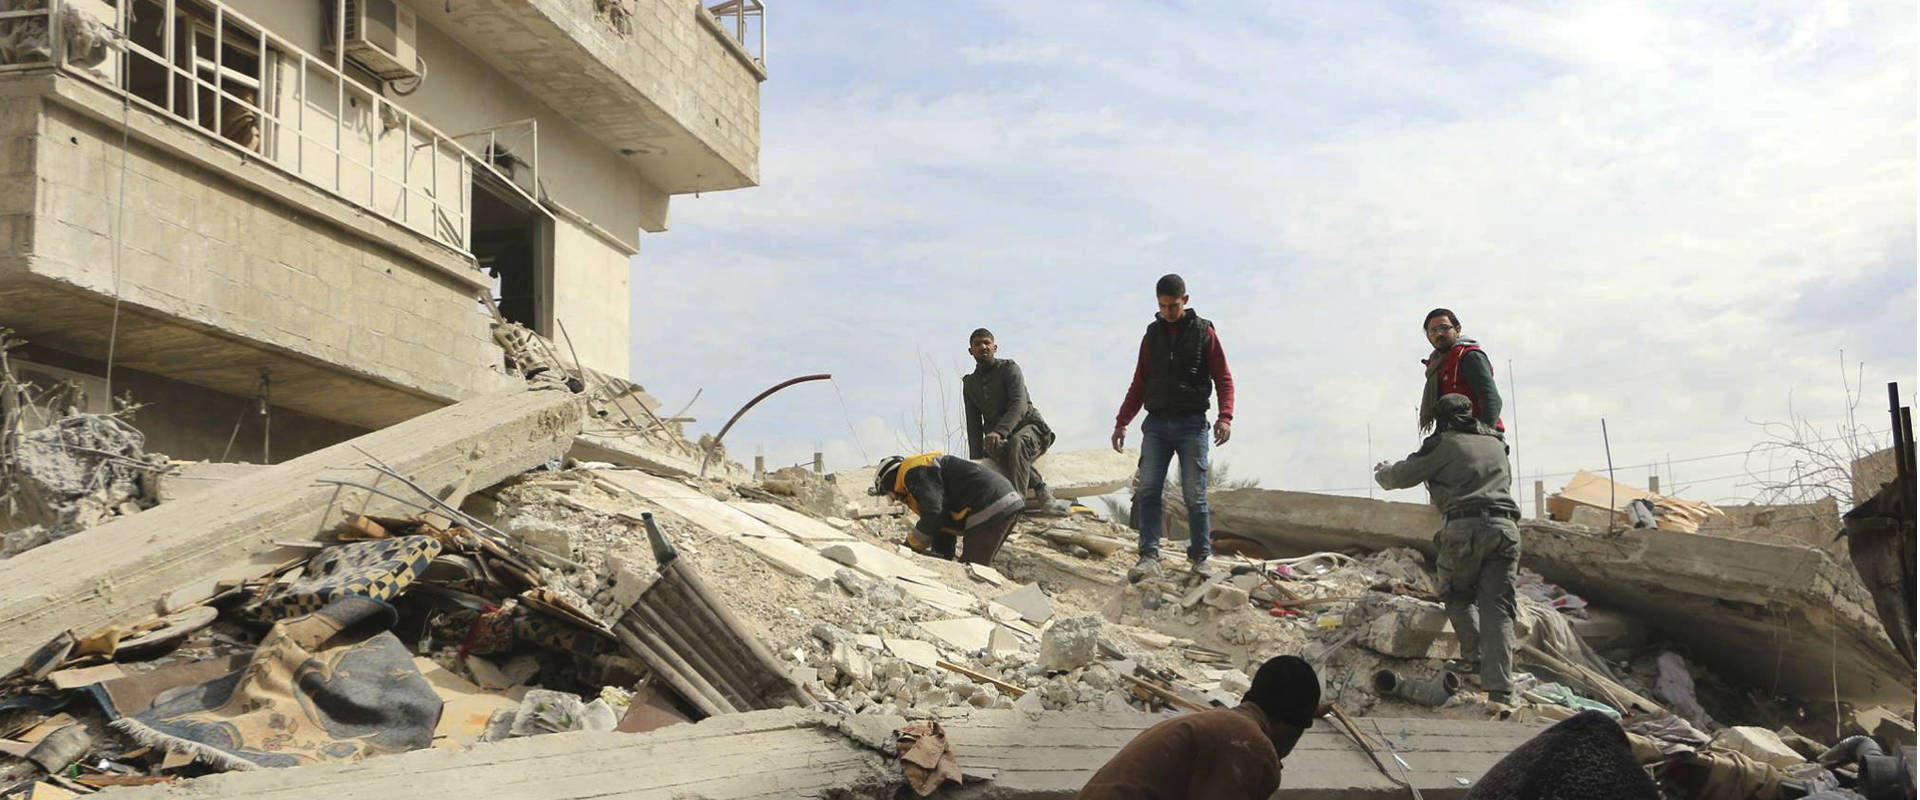 הפצצה סמוך לדמשק בסוריה, 6.2.18